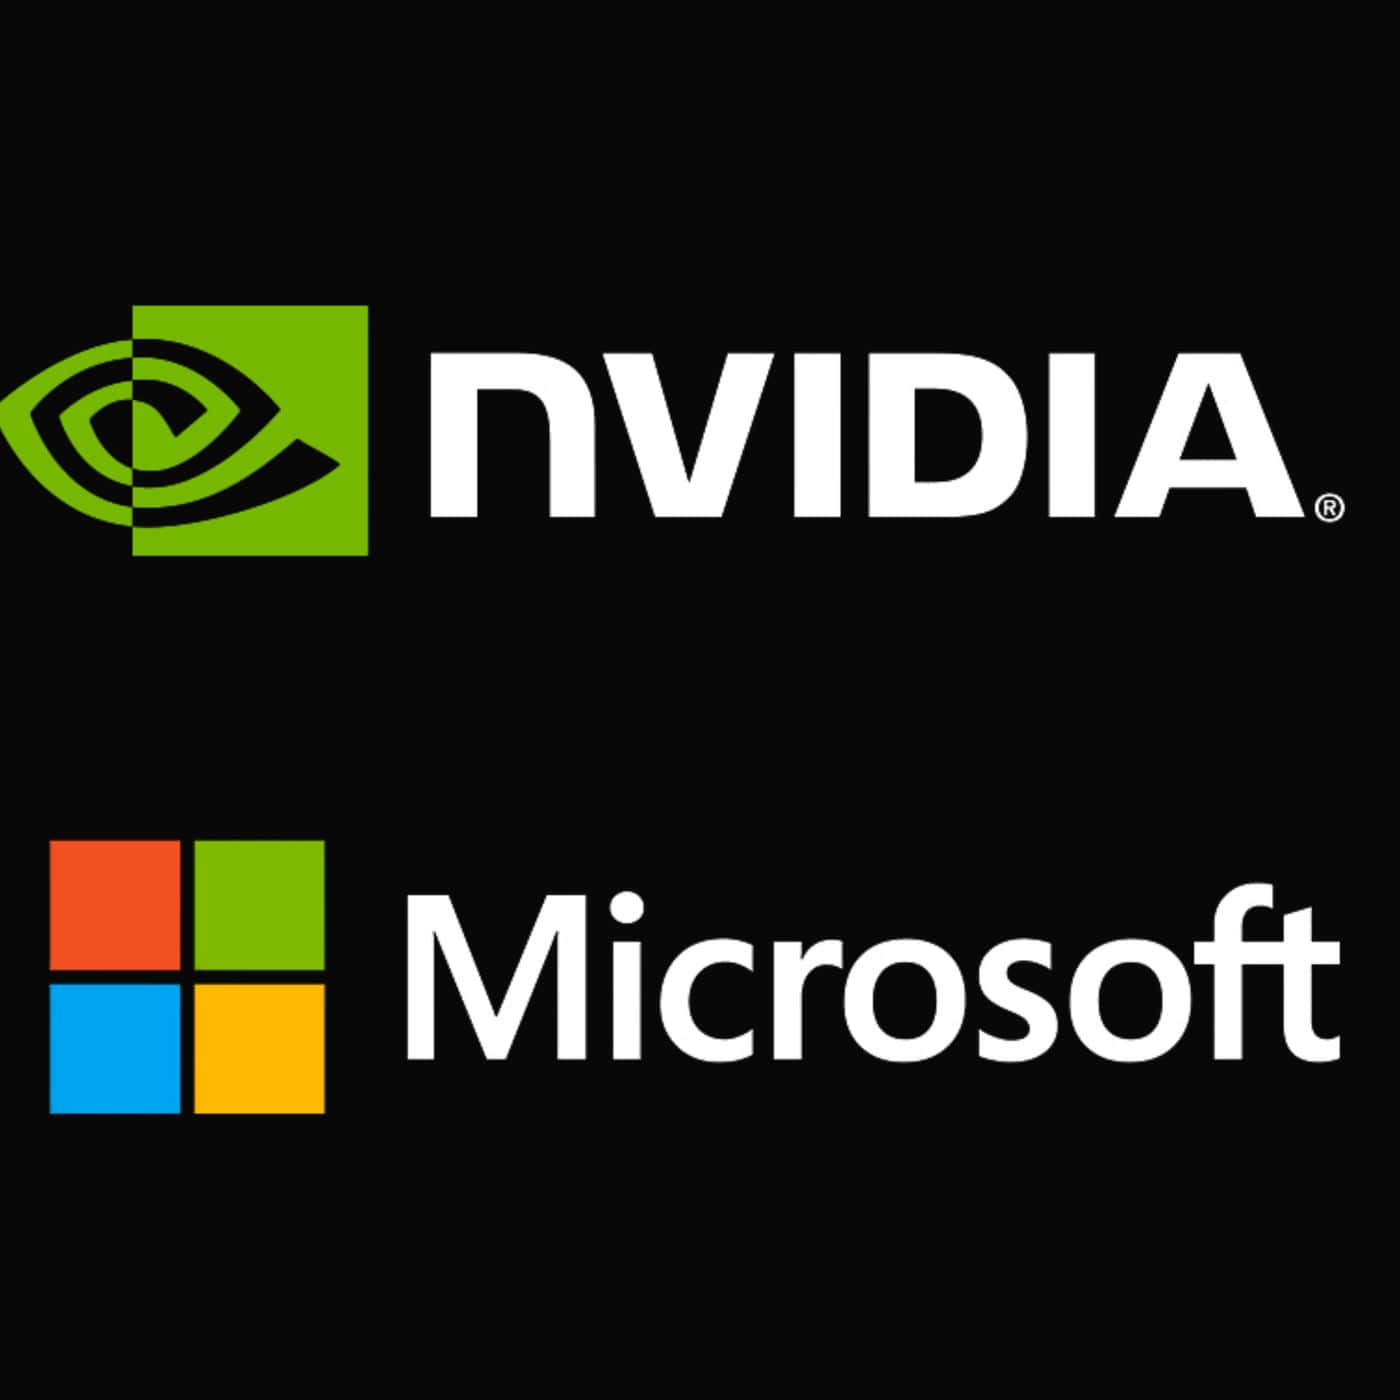 Nvidiaog Microsoft-logoer På En Sort Baggrund.